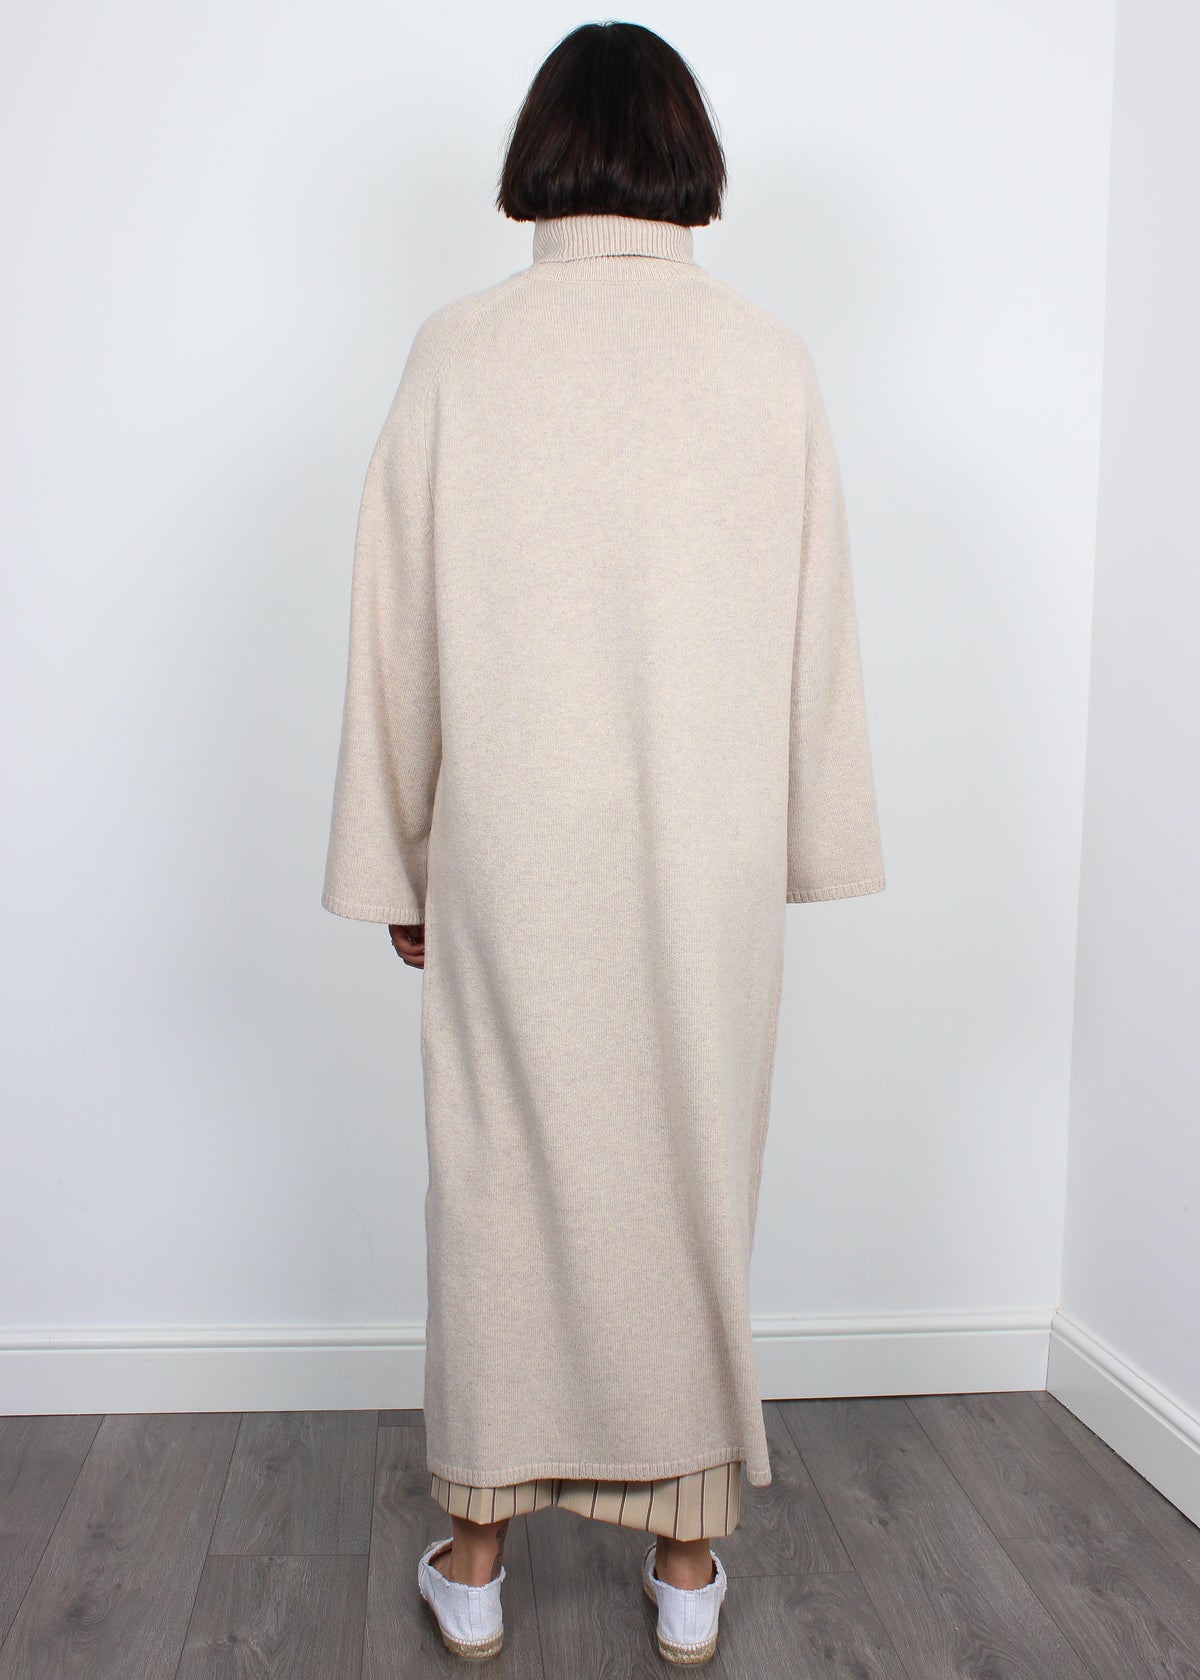 Joseph Viviane merino-wool birch dress